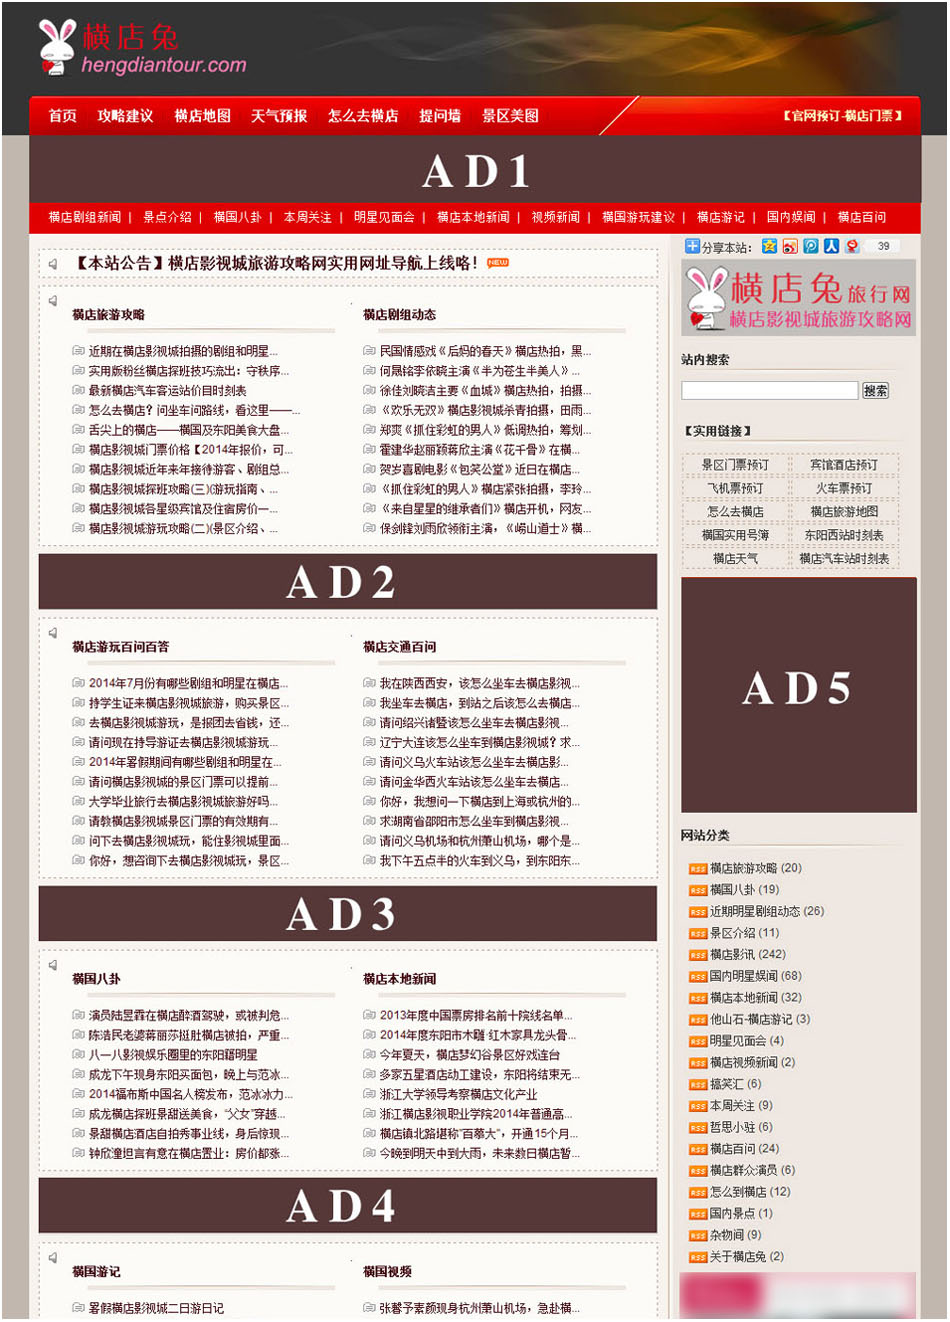 横店兔旅行网首页广告位置图